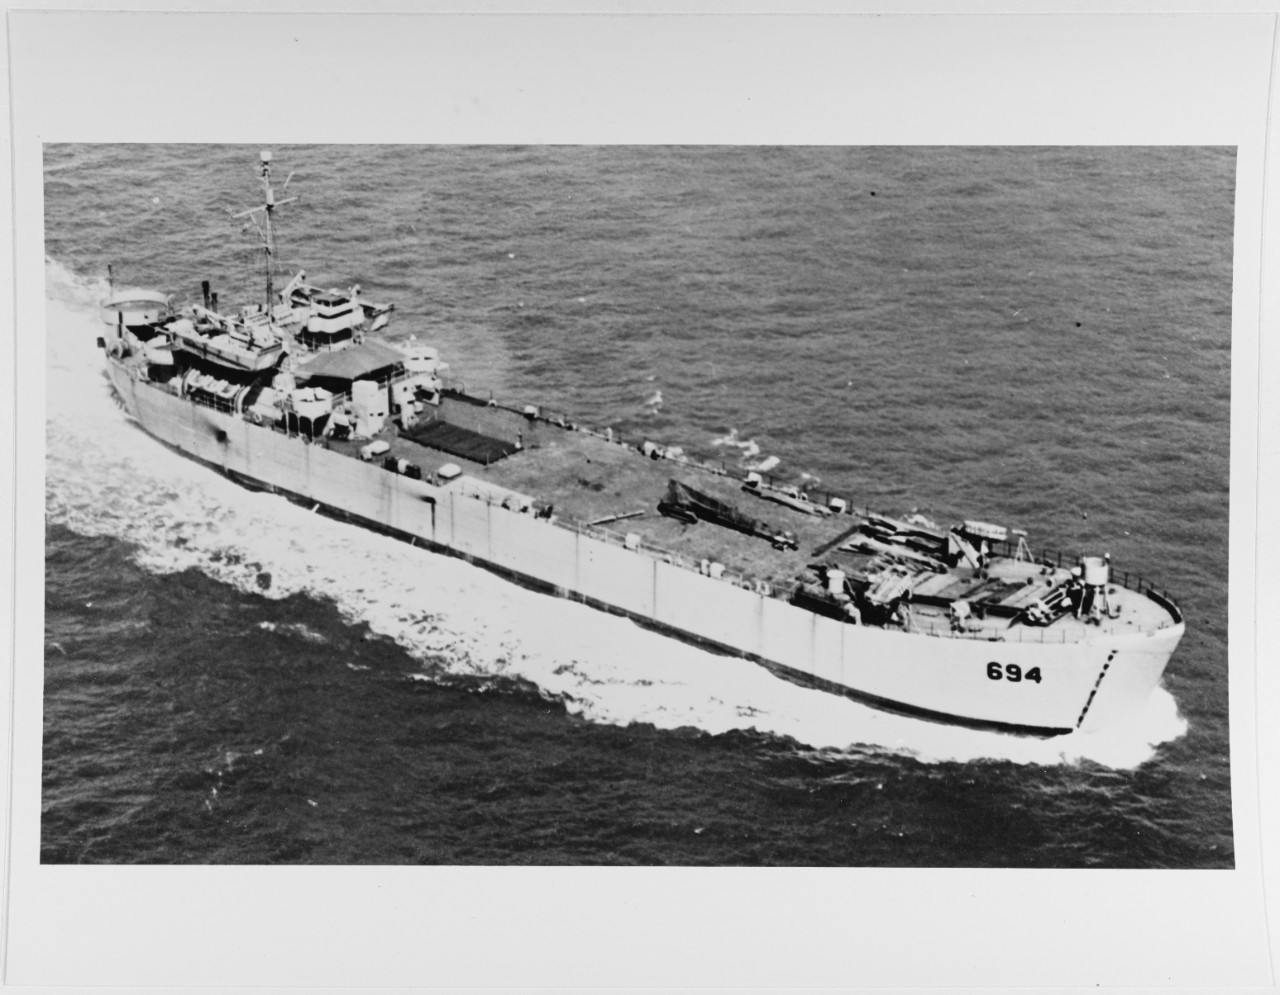 USS LST - 694